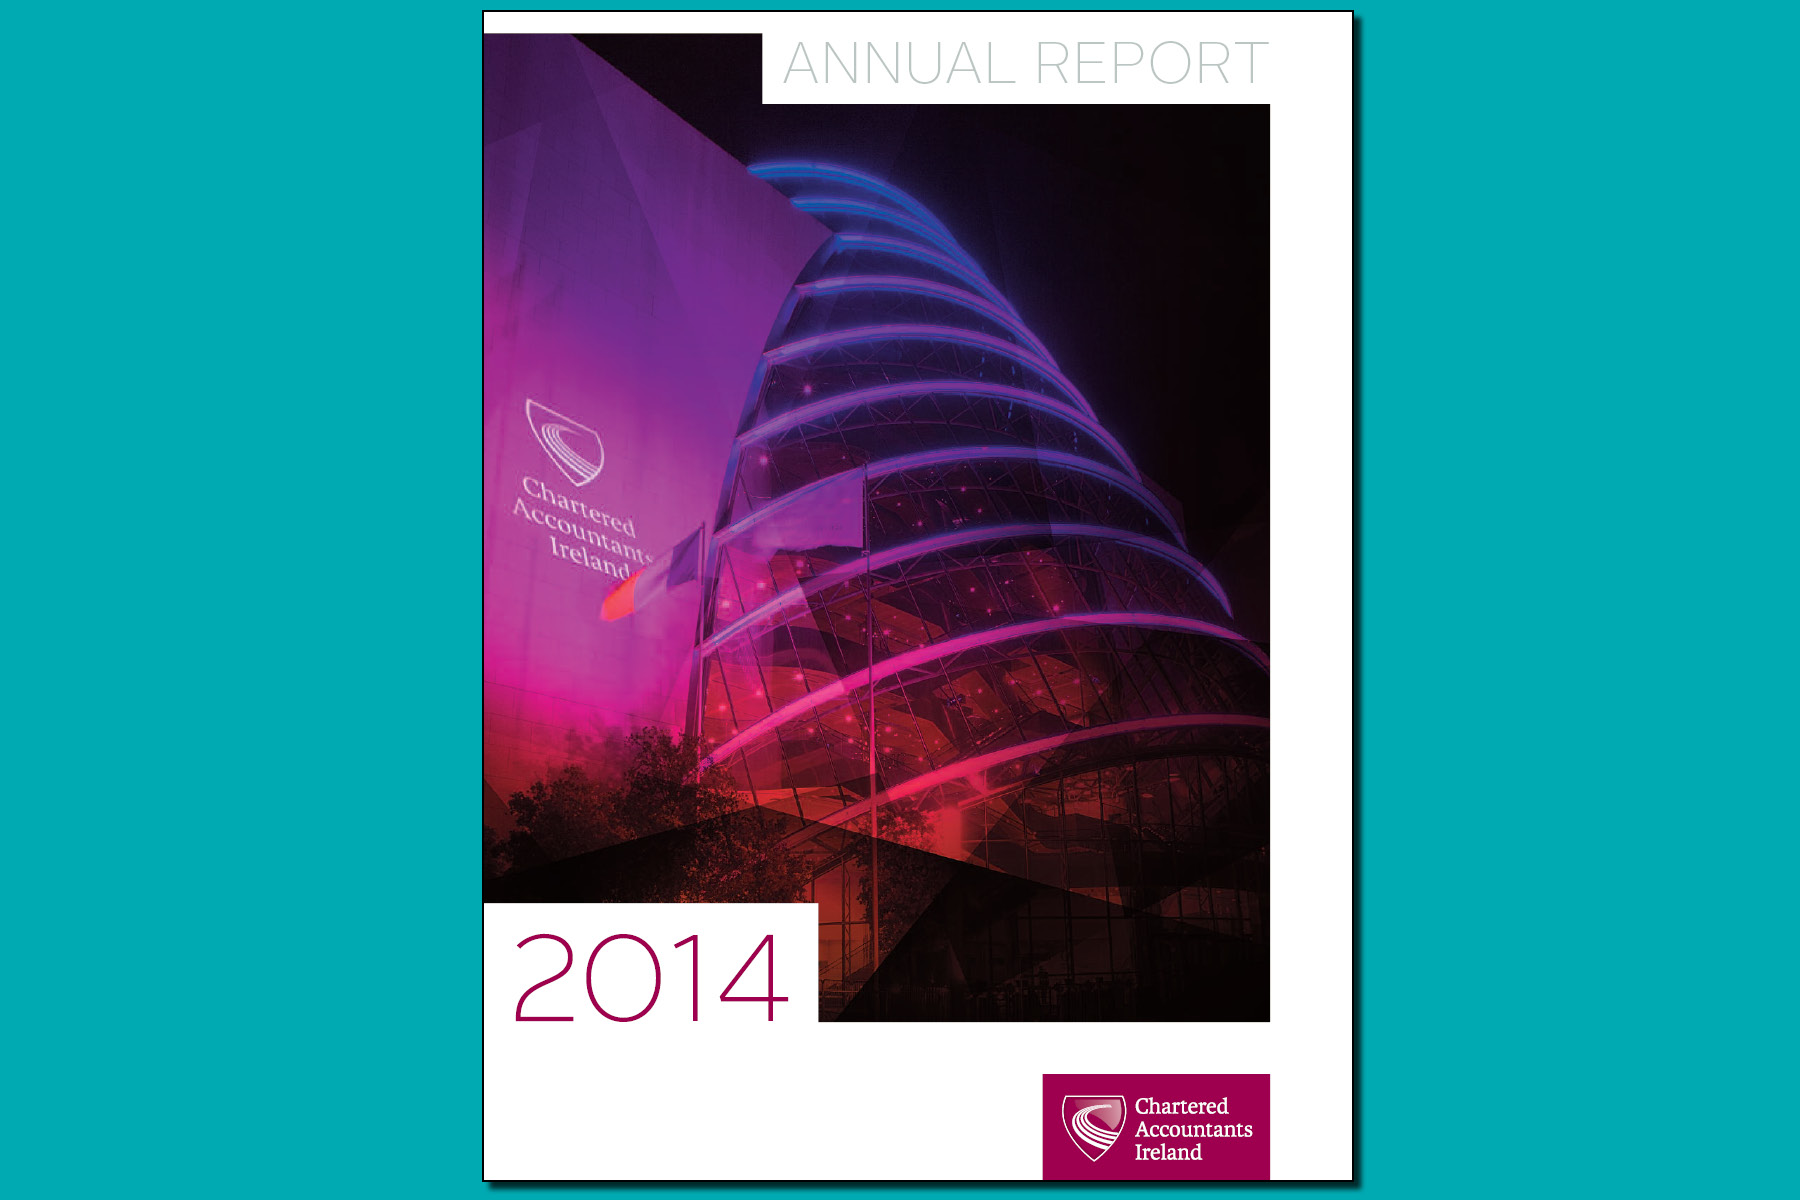 2014 Annual Report 1800x1200